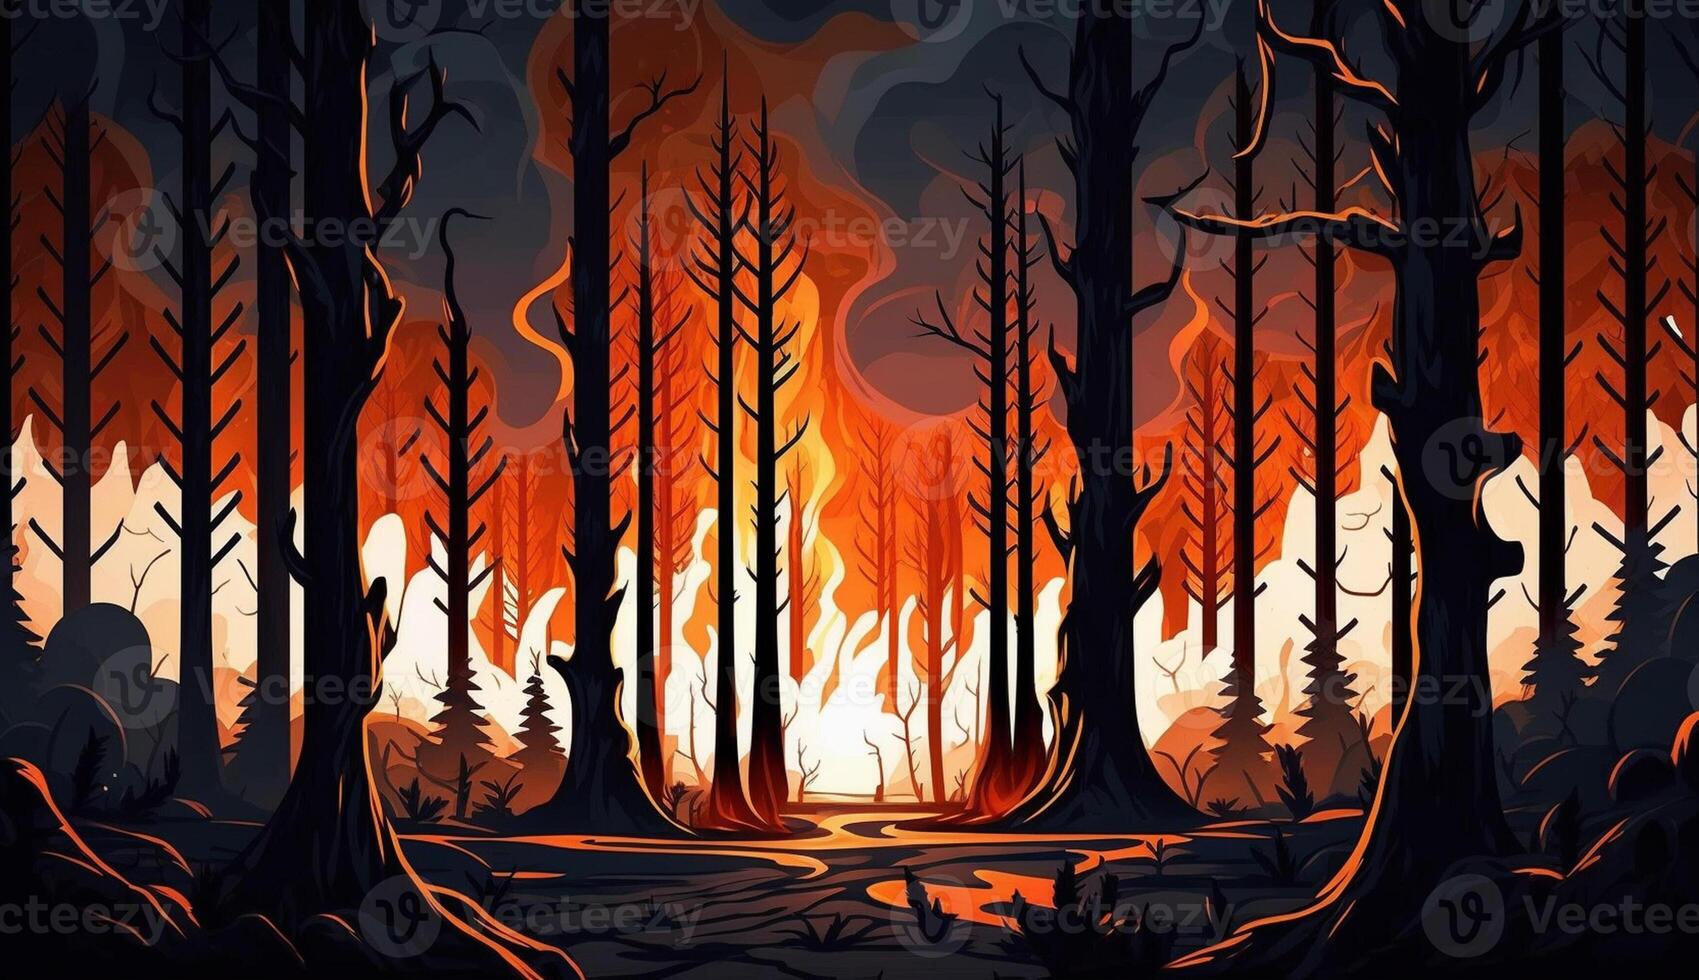 realista desenho animado ilustração do floresta em fogo e cheio do